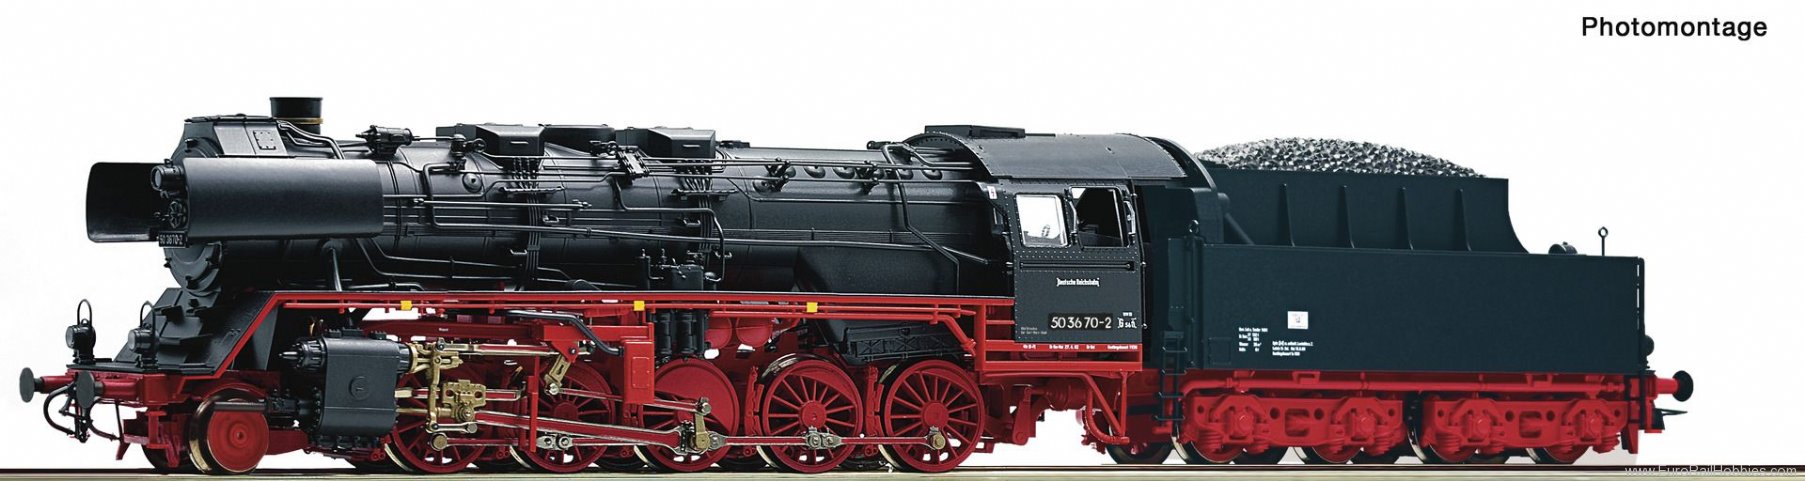 Roco 70287 DR Steam locomotive 50 3670-2,